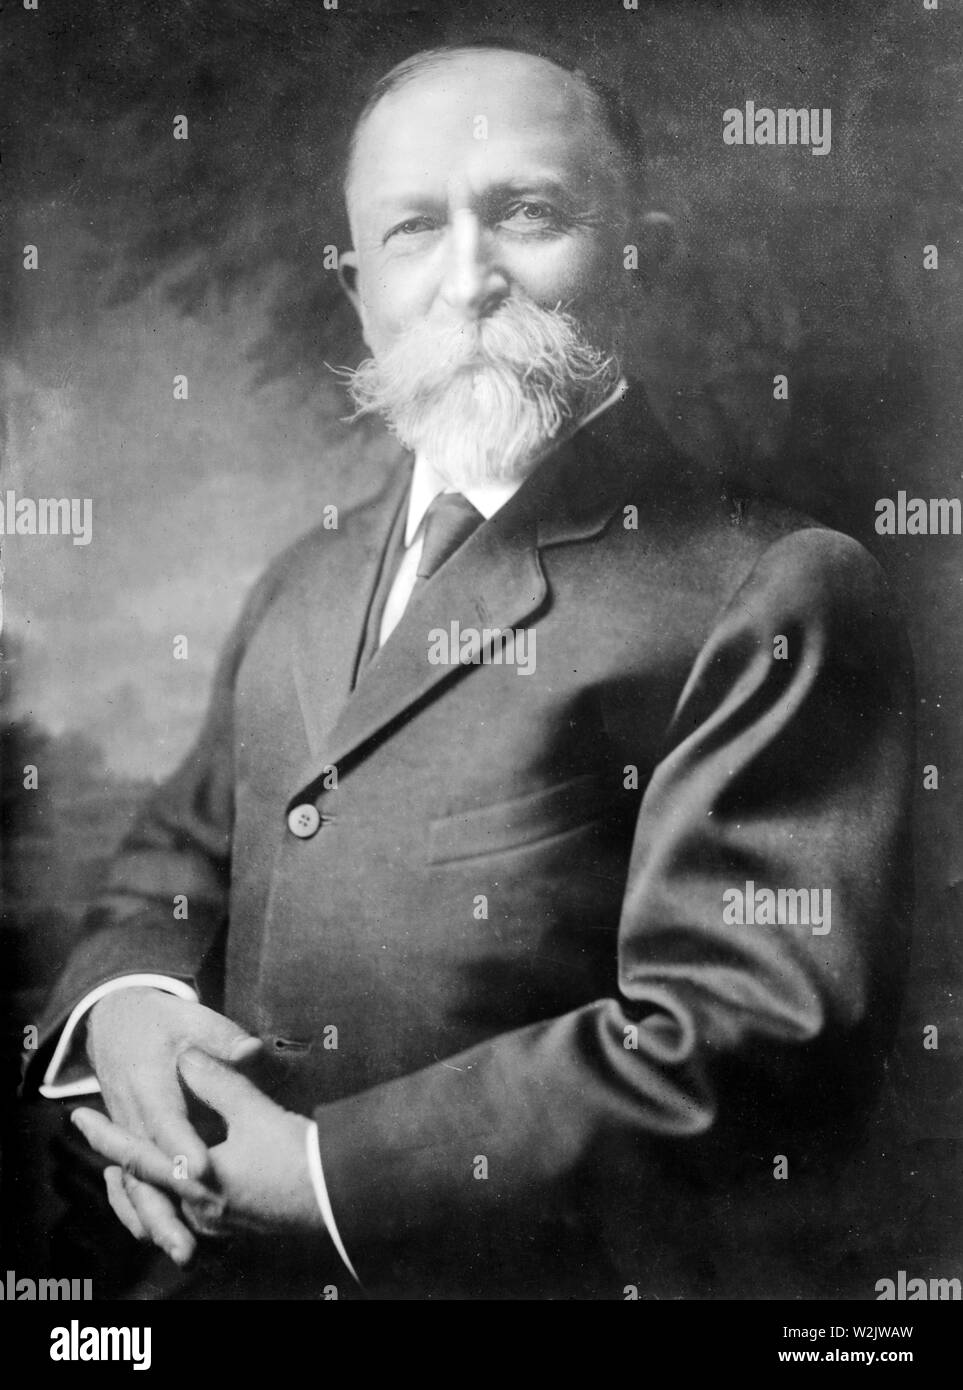 John Harvey Kellogg, co-fondateur de la compagnie Kellogg, John Harvey Kellogg (1852 - 1943) Homme d'affaires américain Banque D'Images